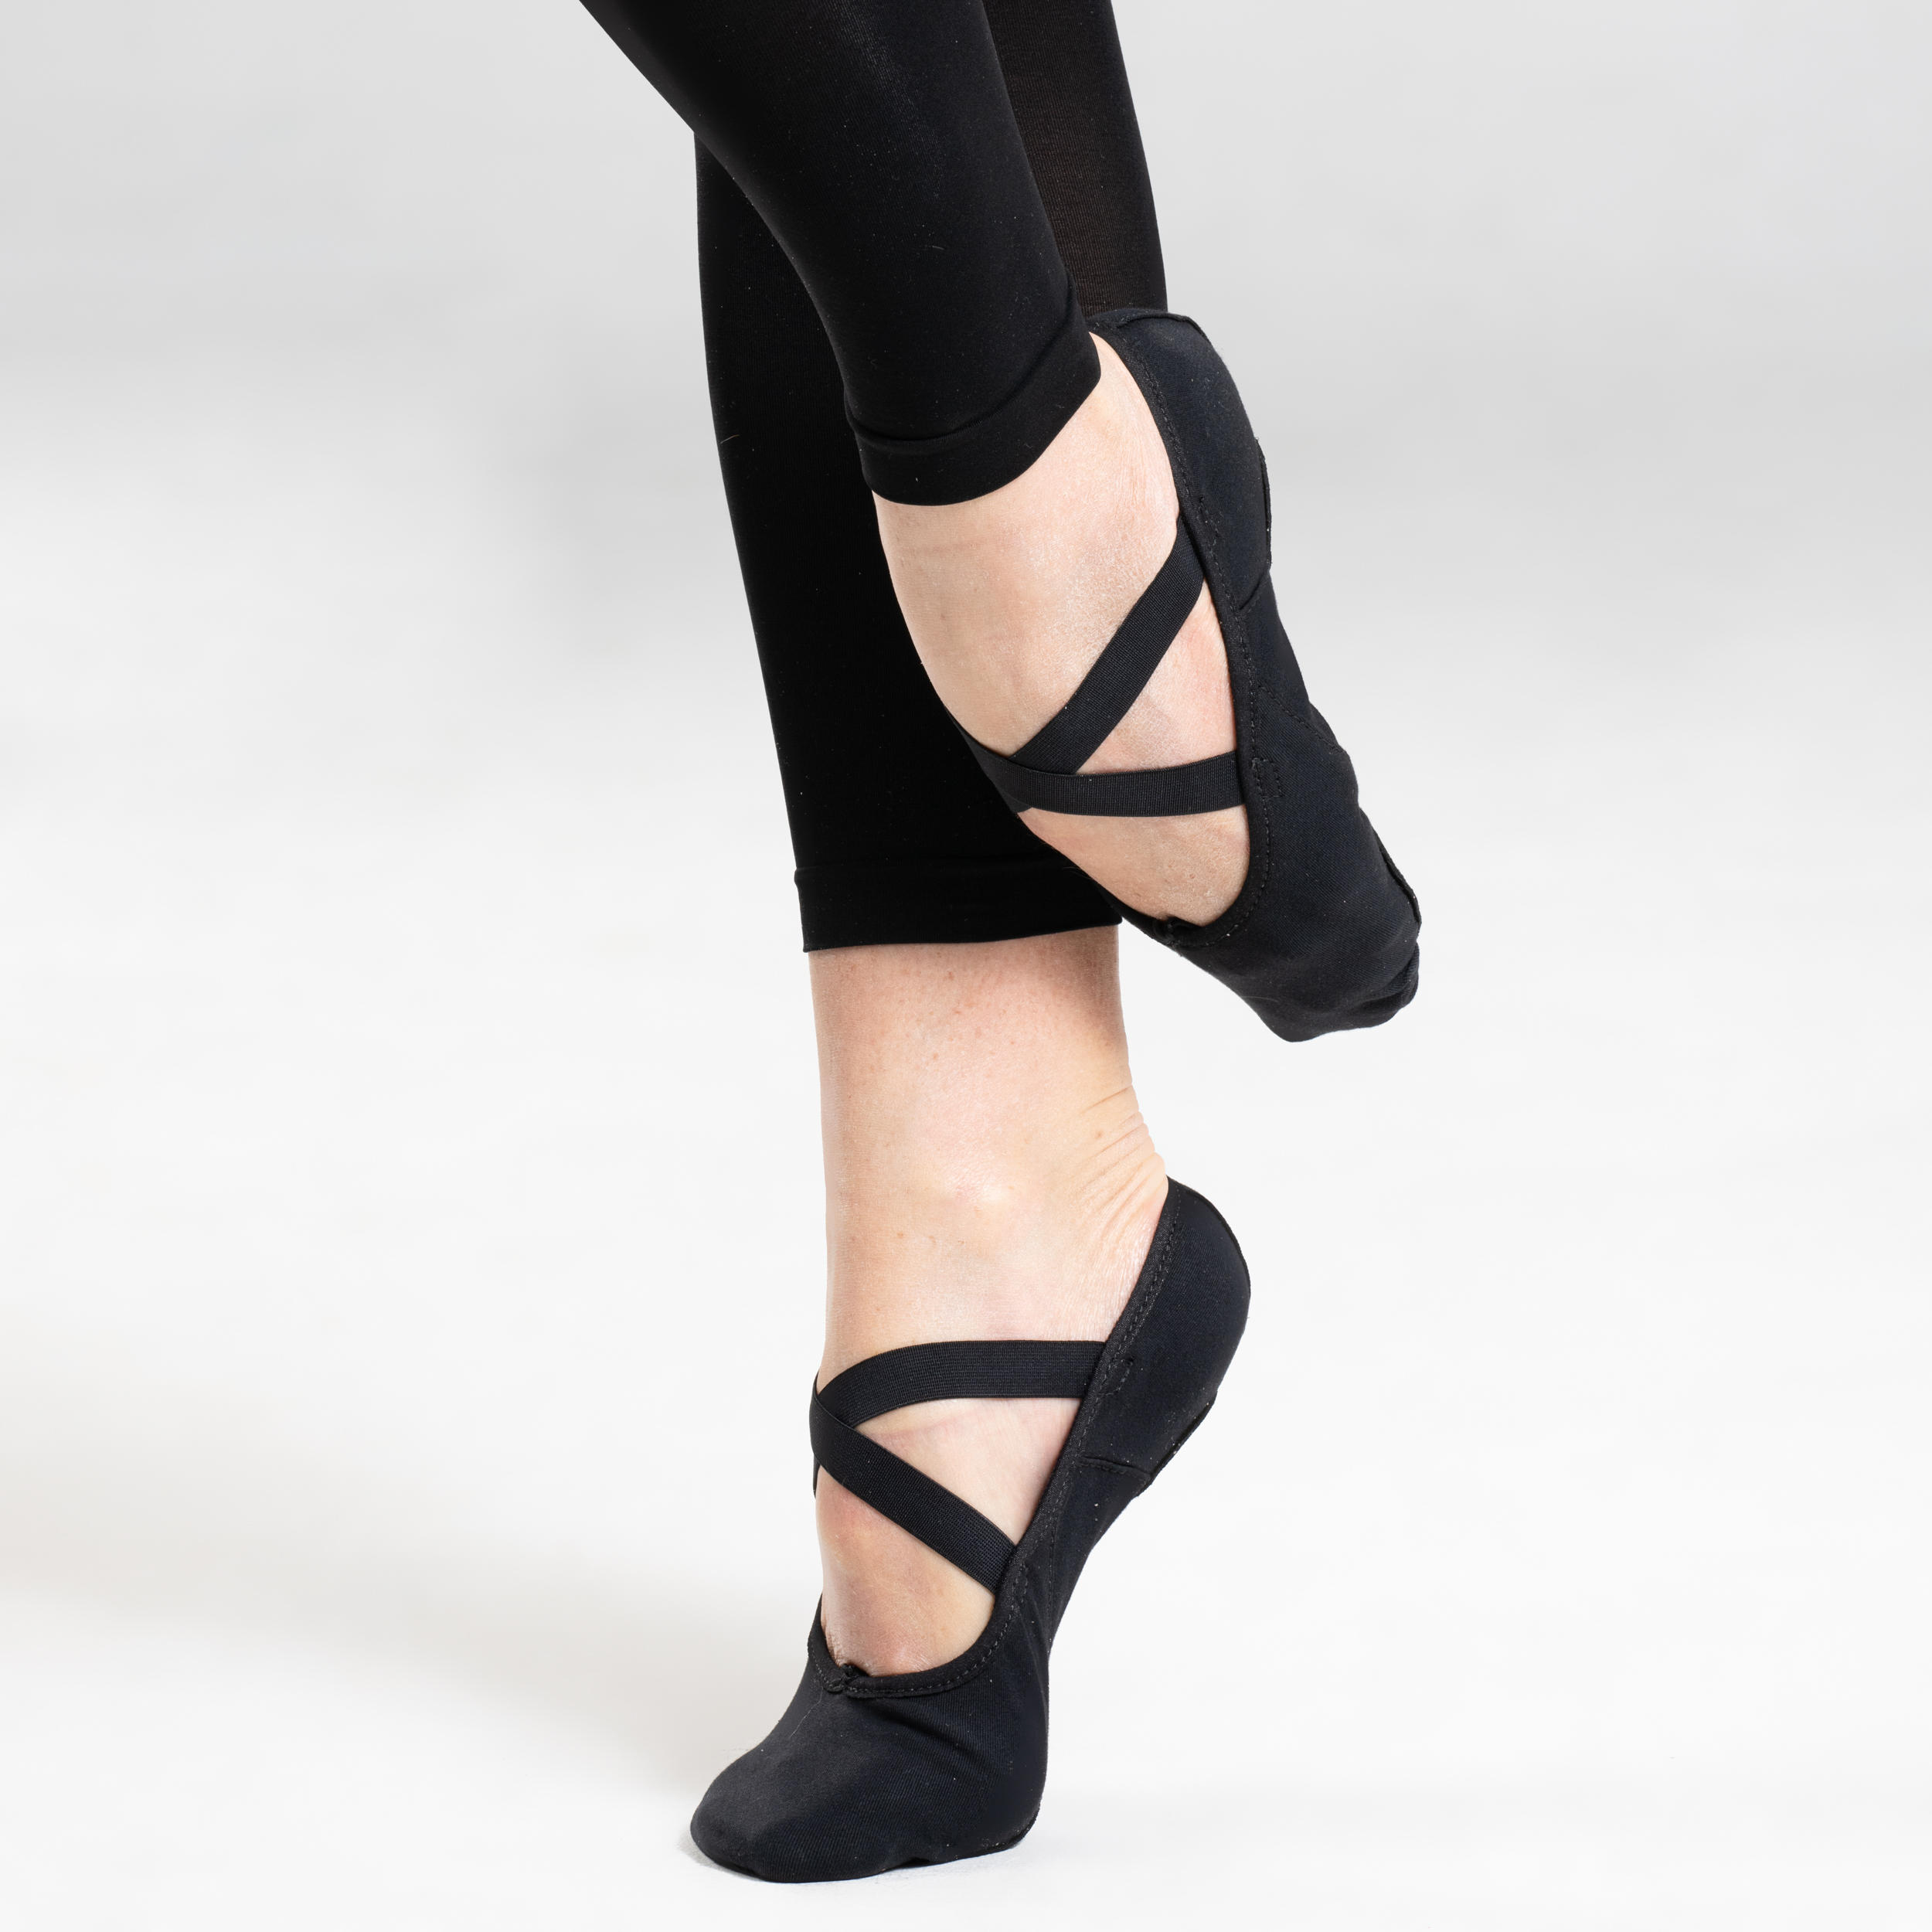 Stretch Canvas Split-Sole Demi-Pointe Ballet Shoes Size 7.5 to 8 - Black 5/10